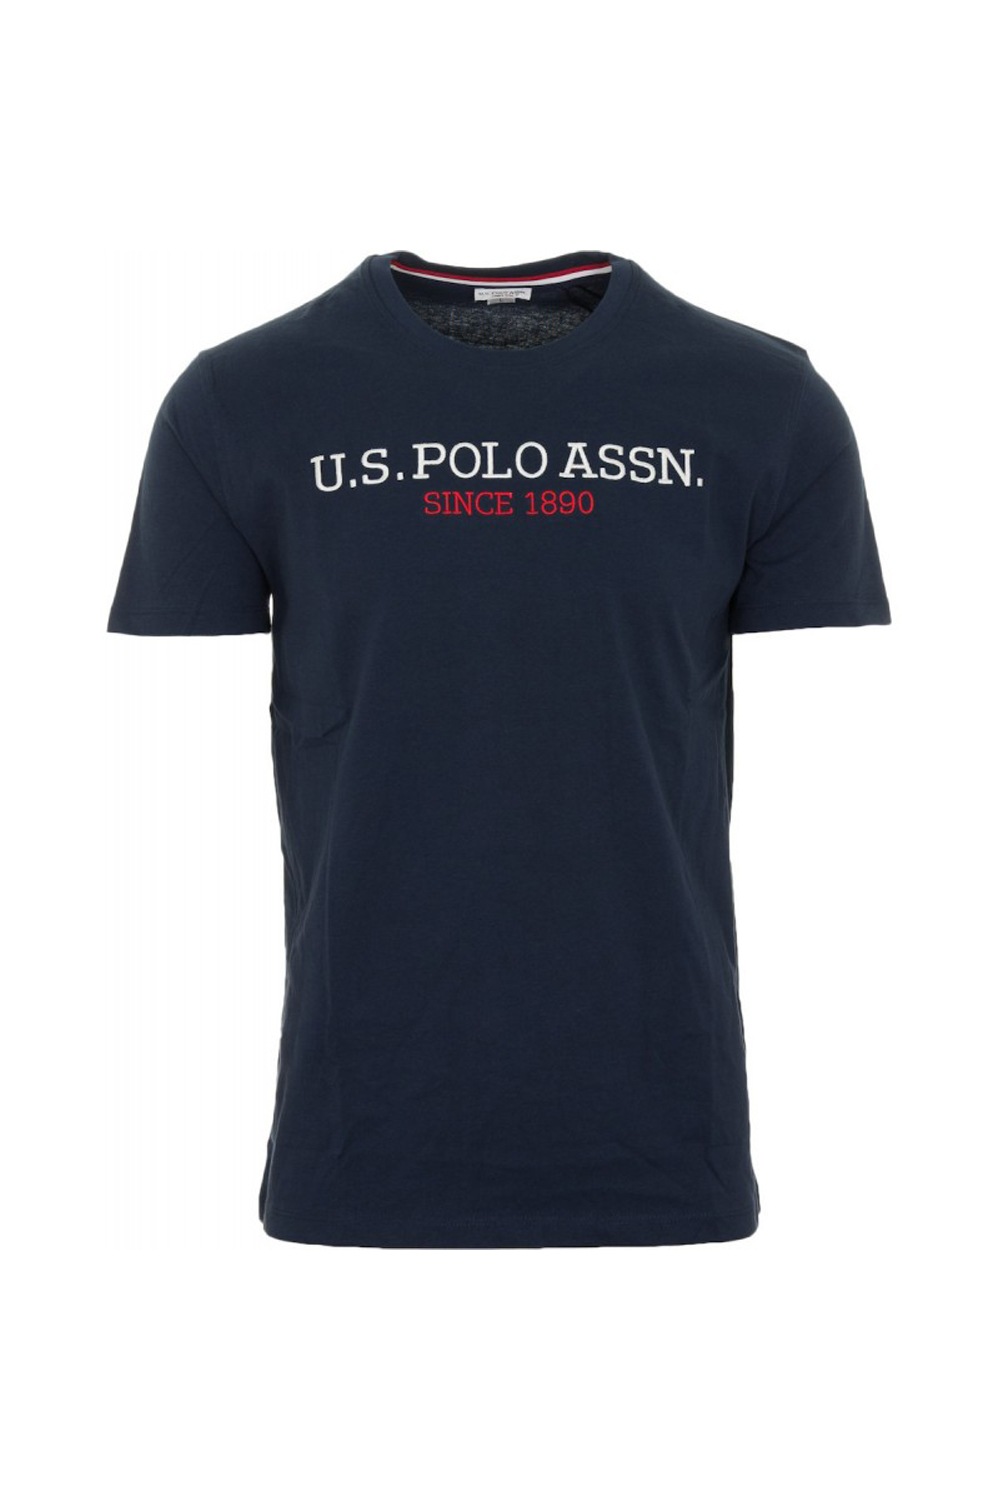 Ανδρική Μπλούζα U.S. POLO ASSN. 5994149351-179 Navy